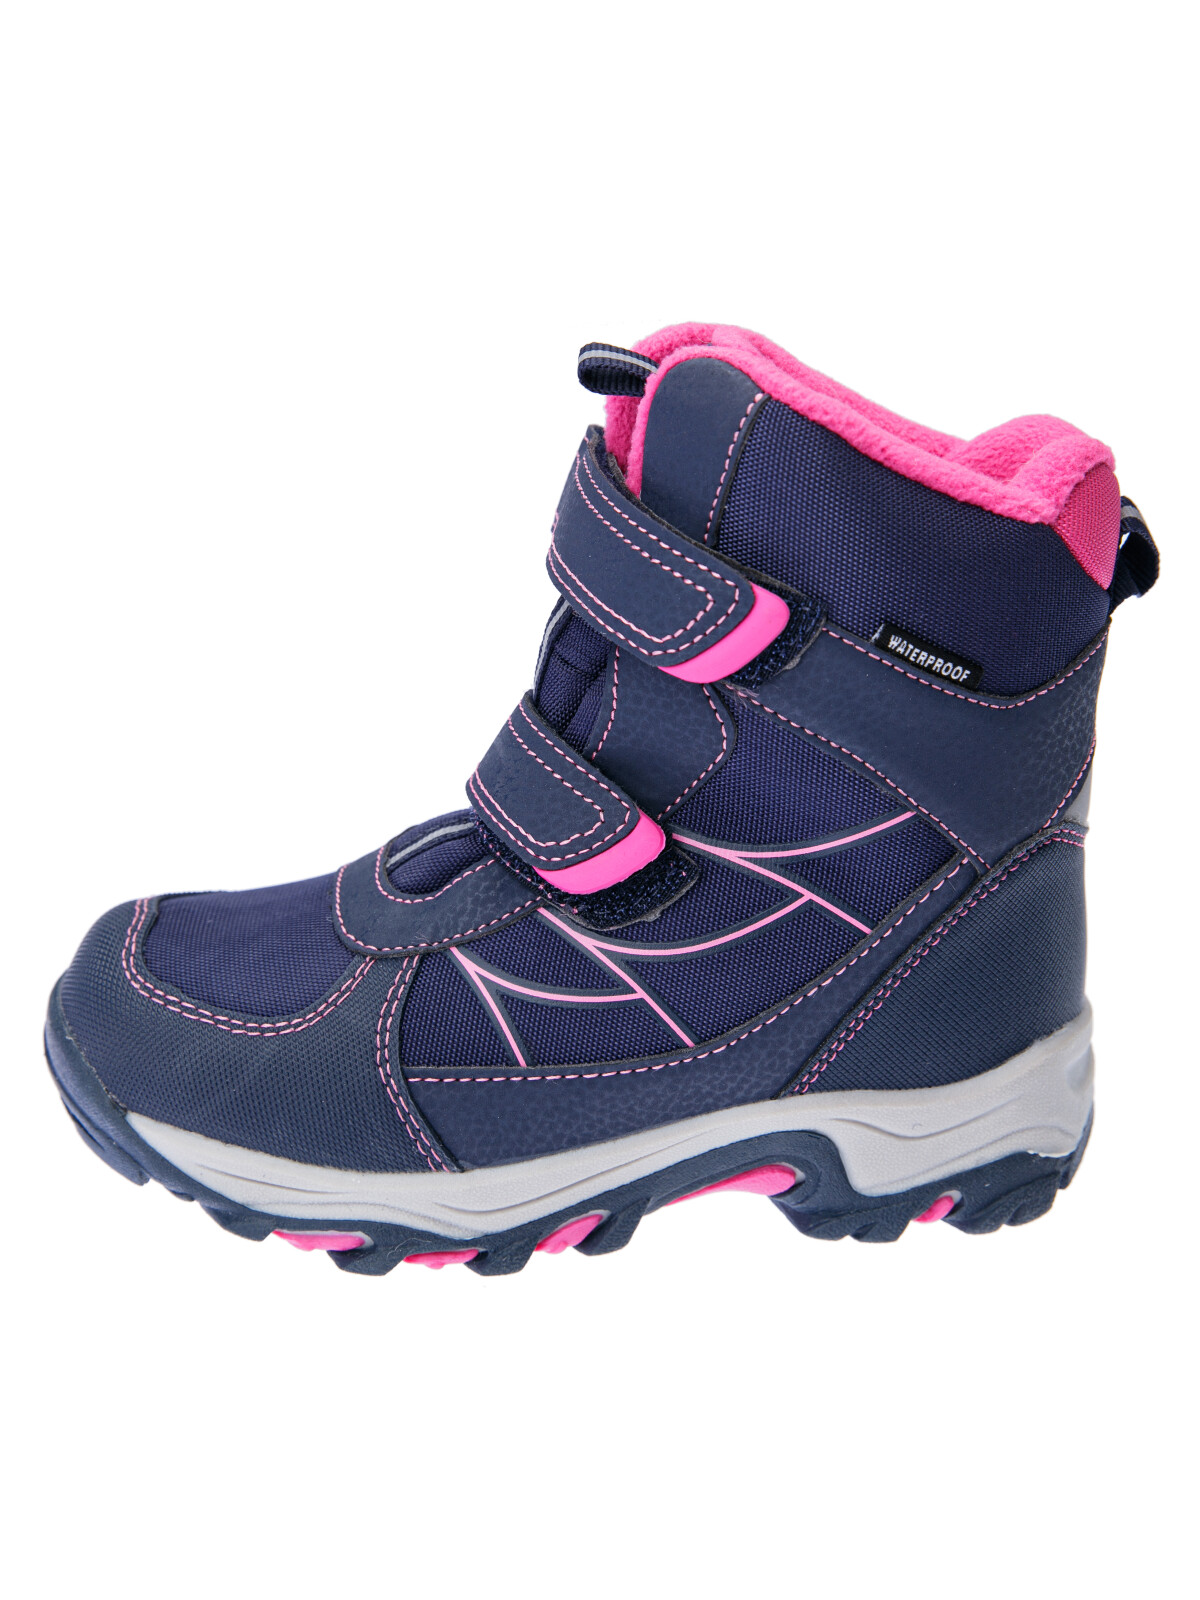 Зимние мембранные ботинки для девочки PlayToday, тёмно-синий,фуксия, 29